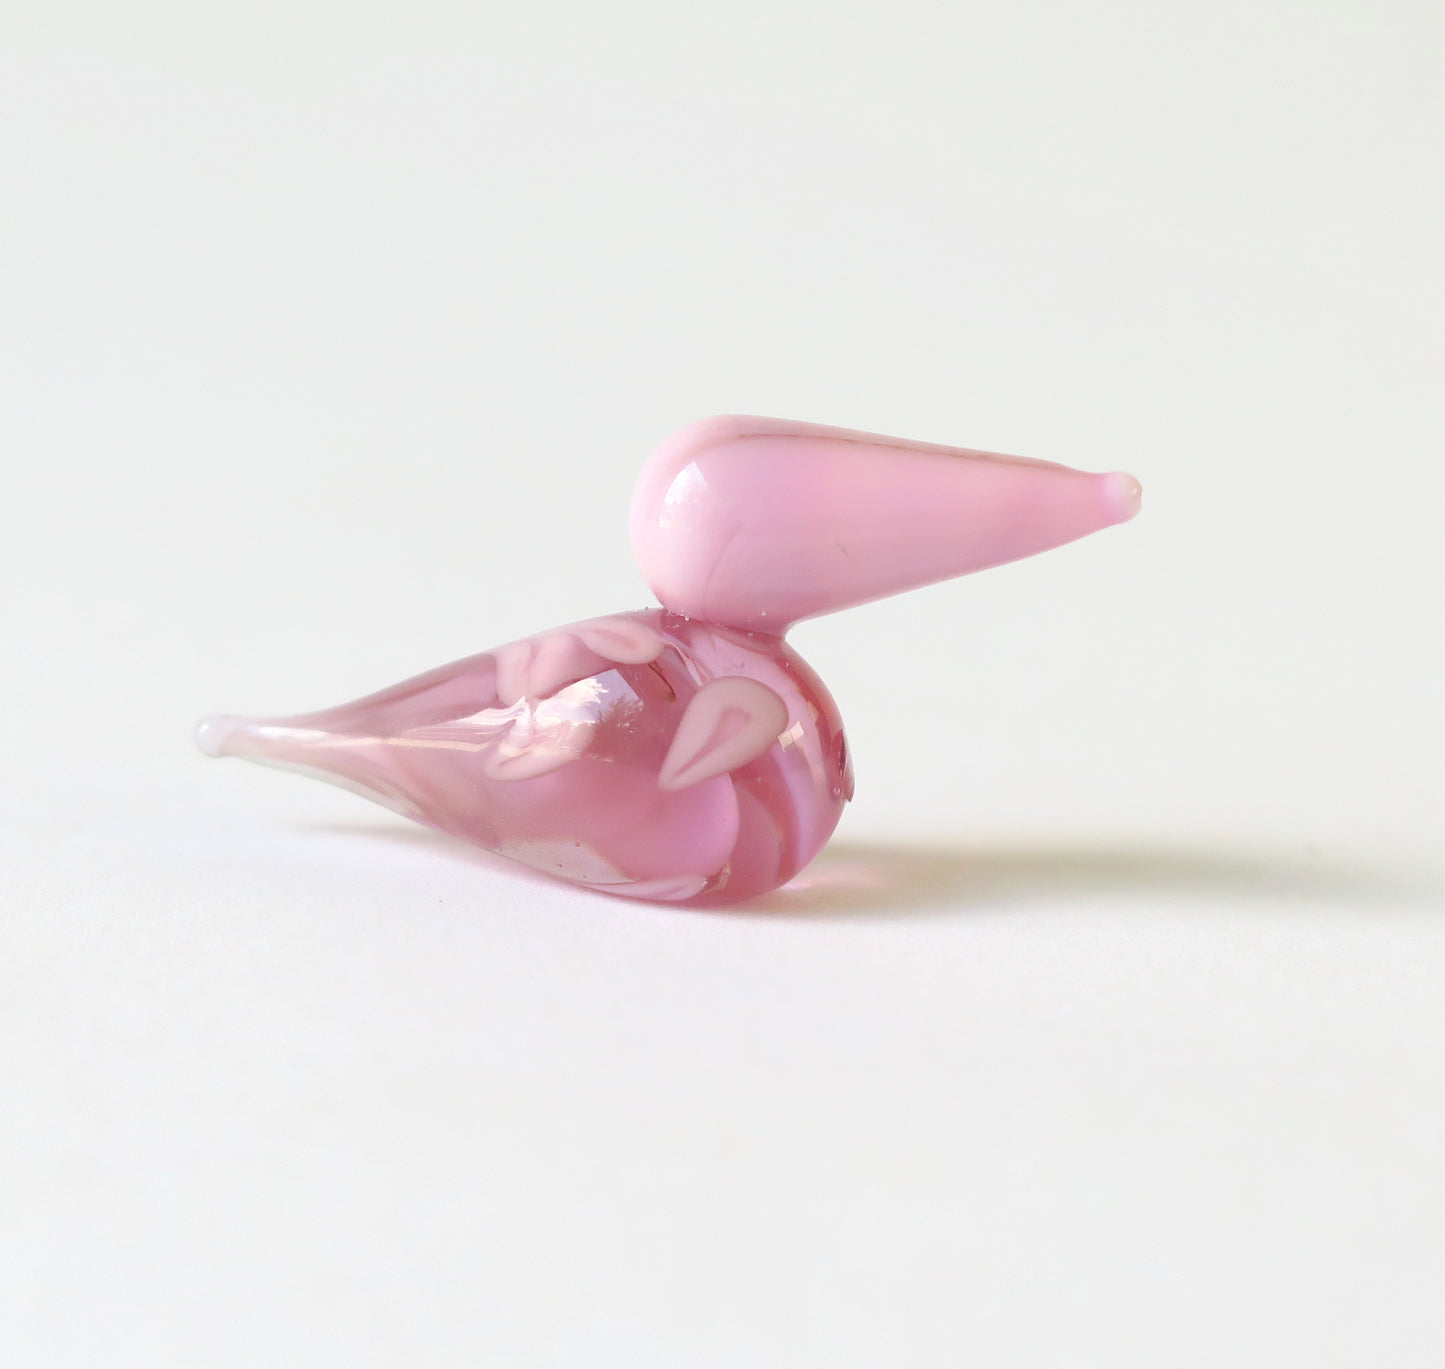 Pink bird glass sculpture